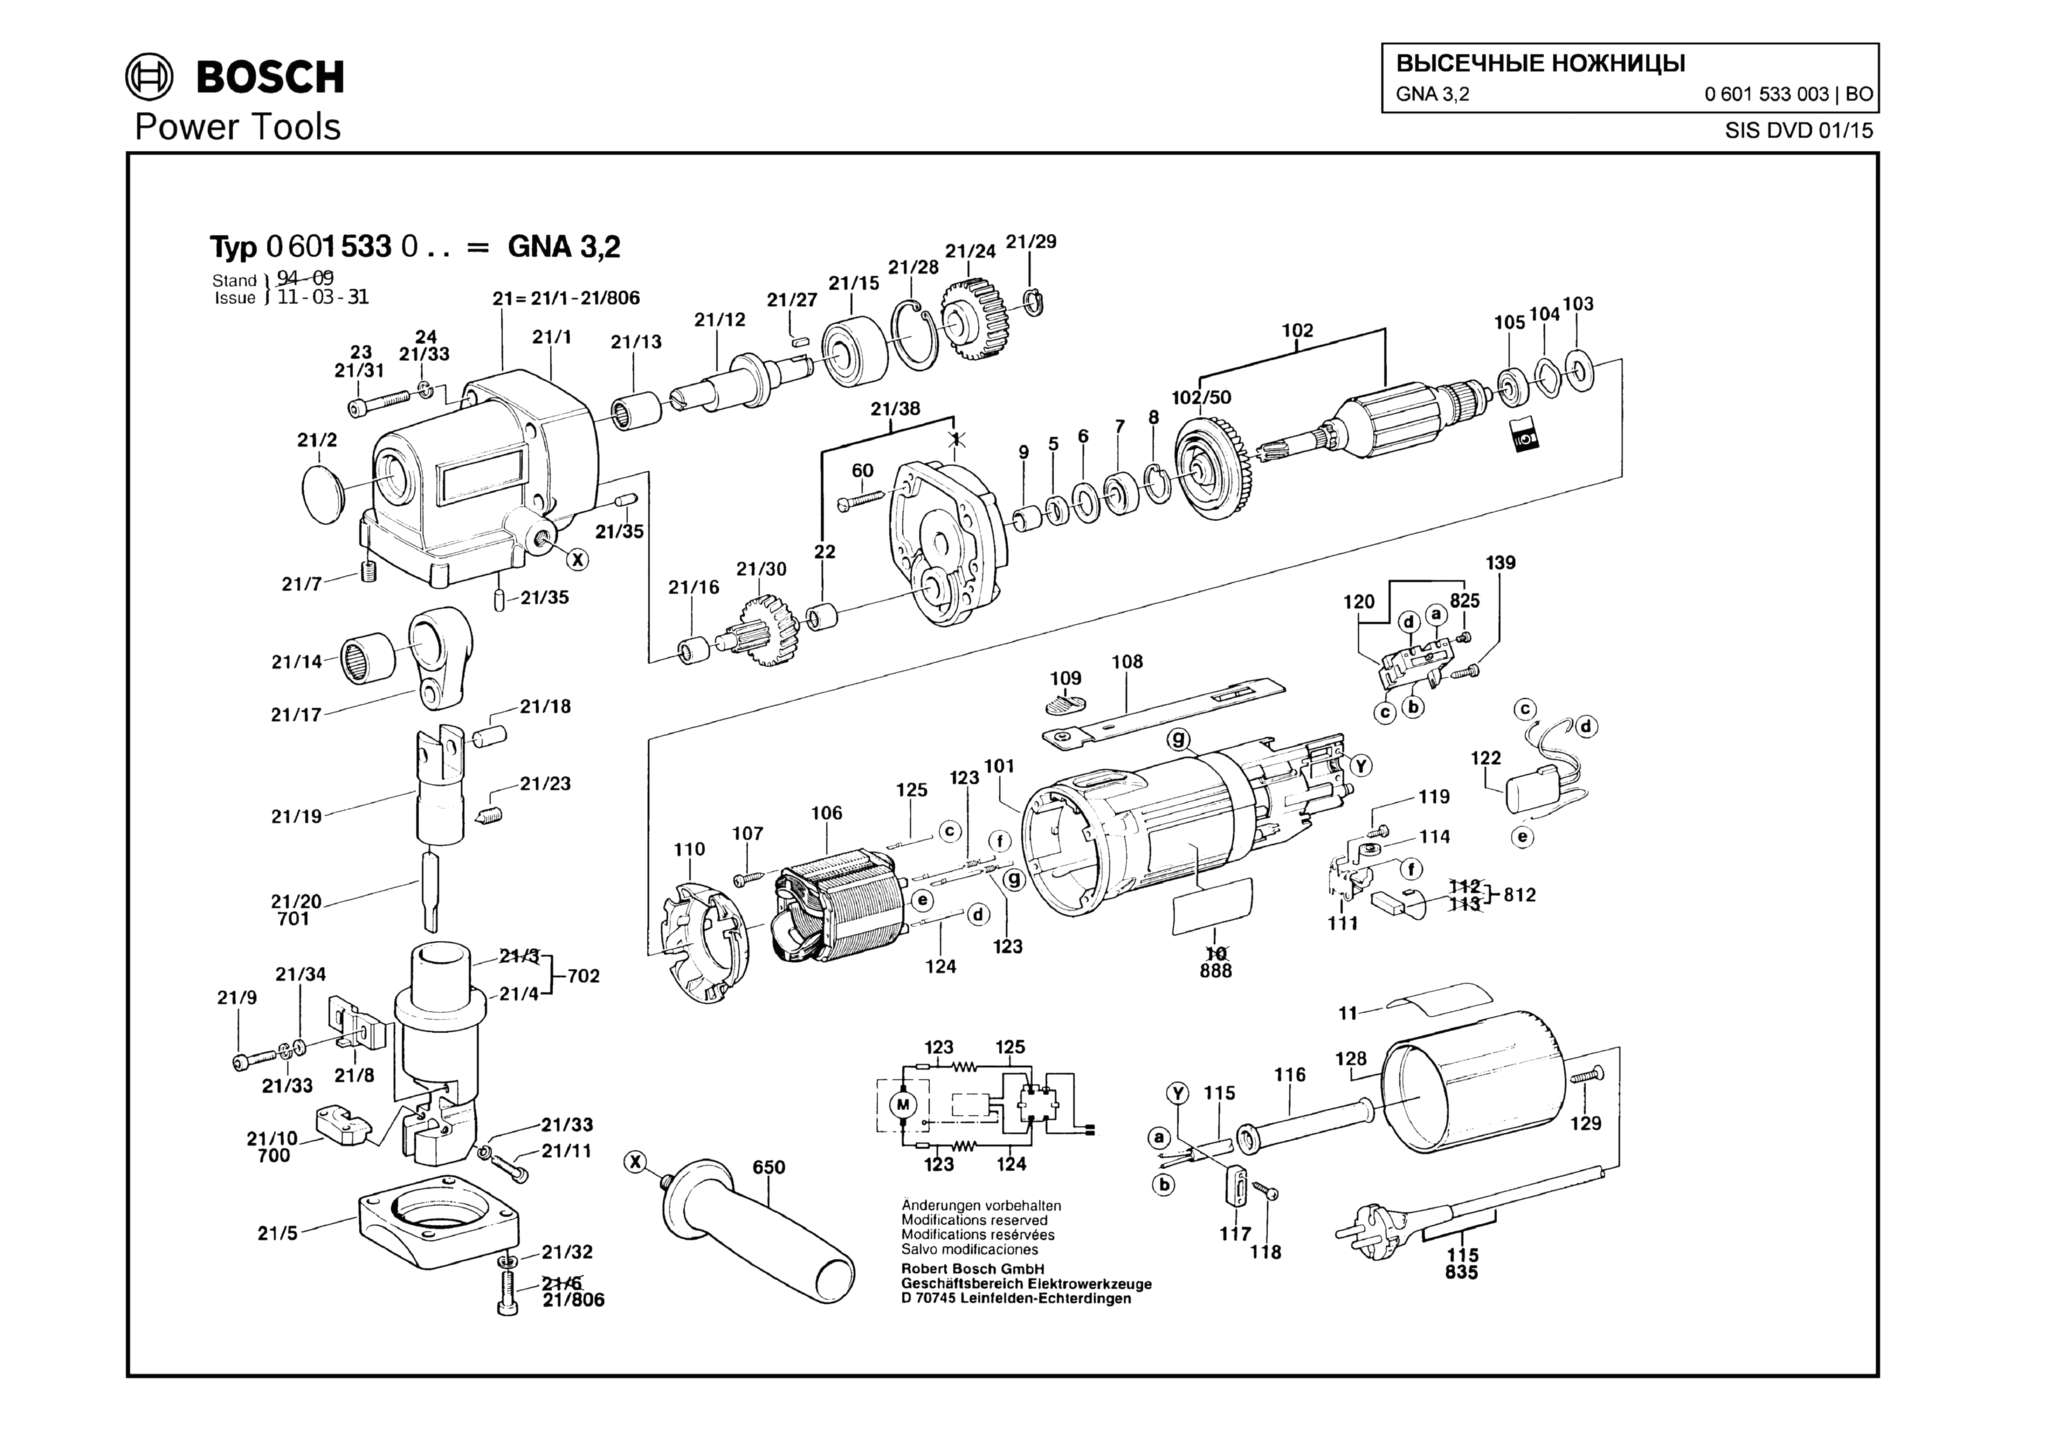 Запчасти, схема и деталировка Bosch GNA 3,2 (ТИП 0601533003)